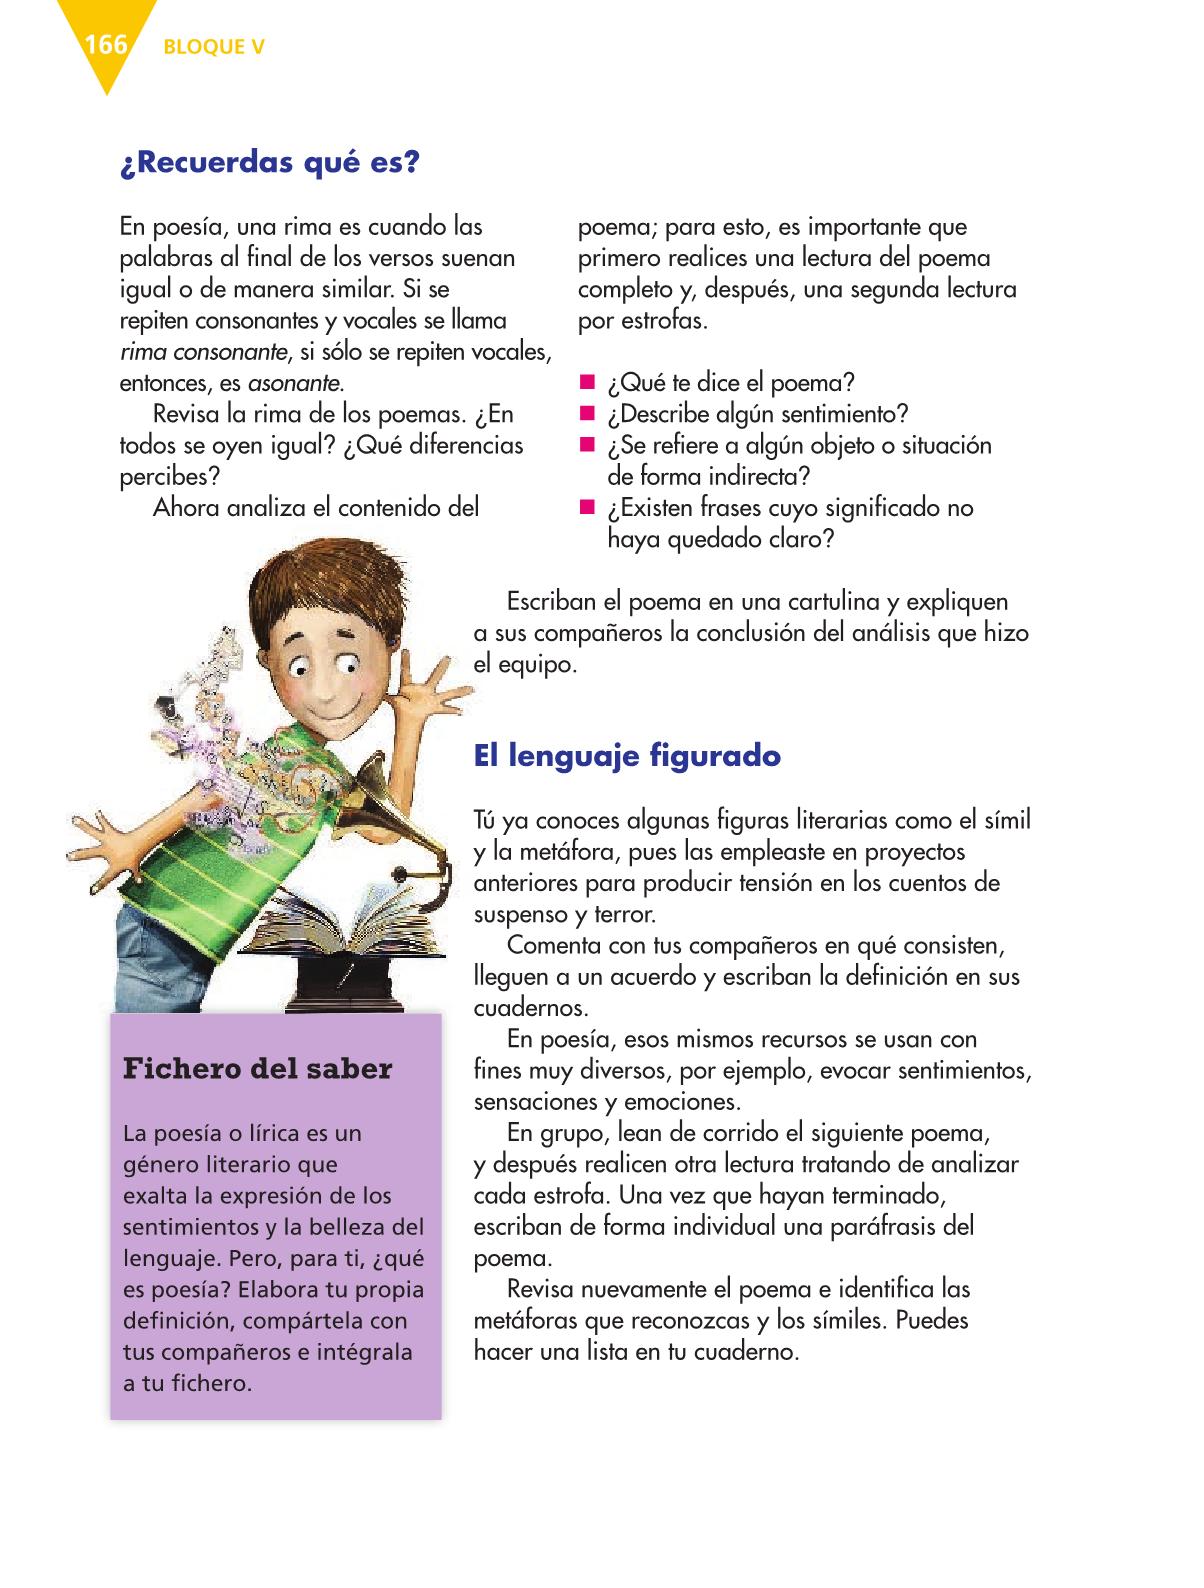 Español Sexto grado 2016-2017 - Online - Página 166 - Libros de Texto Online